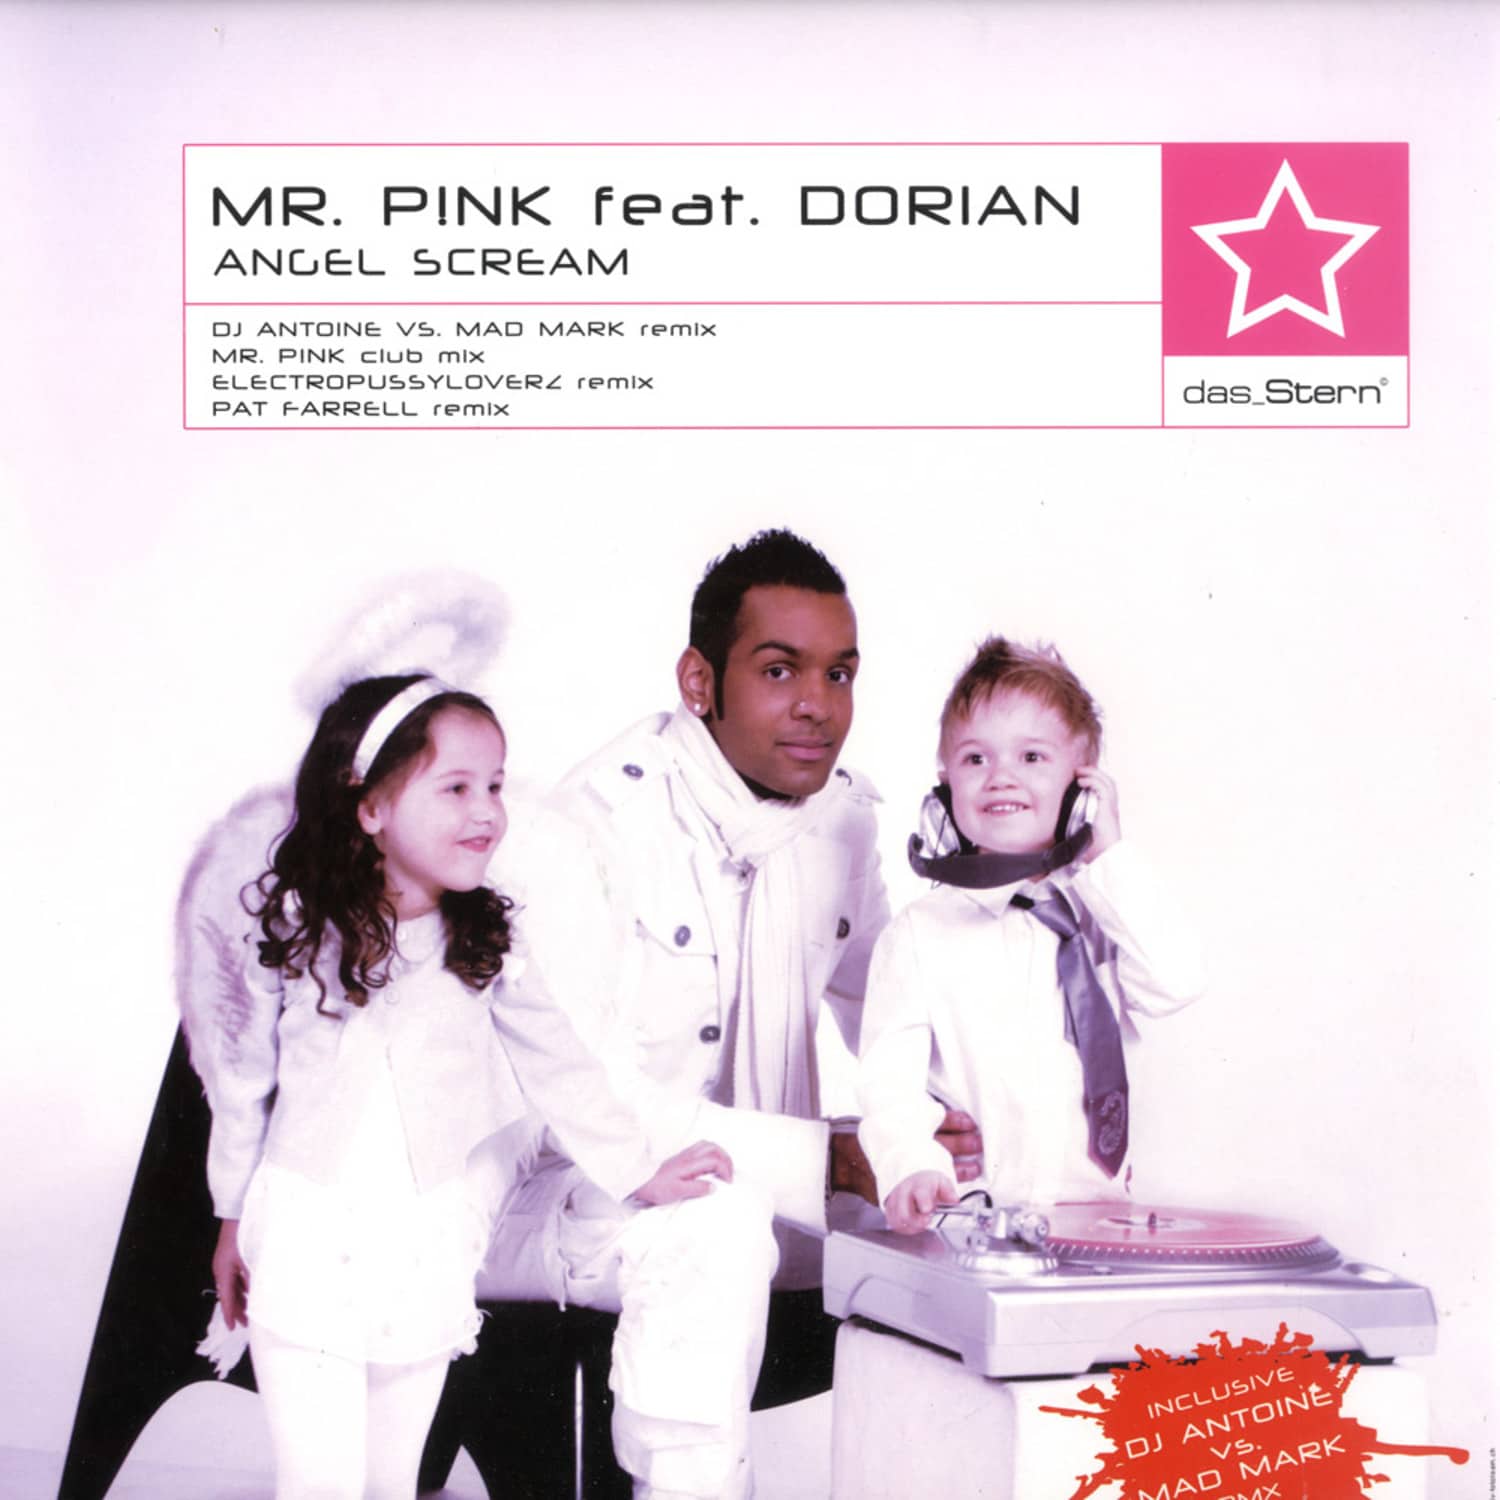 Mr. Pink feat. Dorian - ANGEL SCREAM